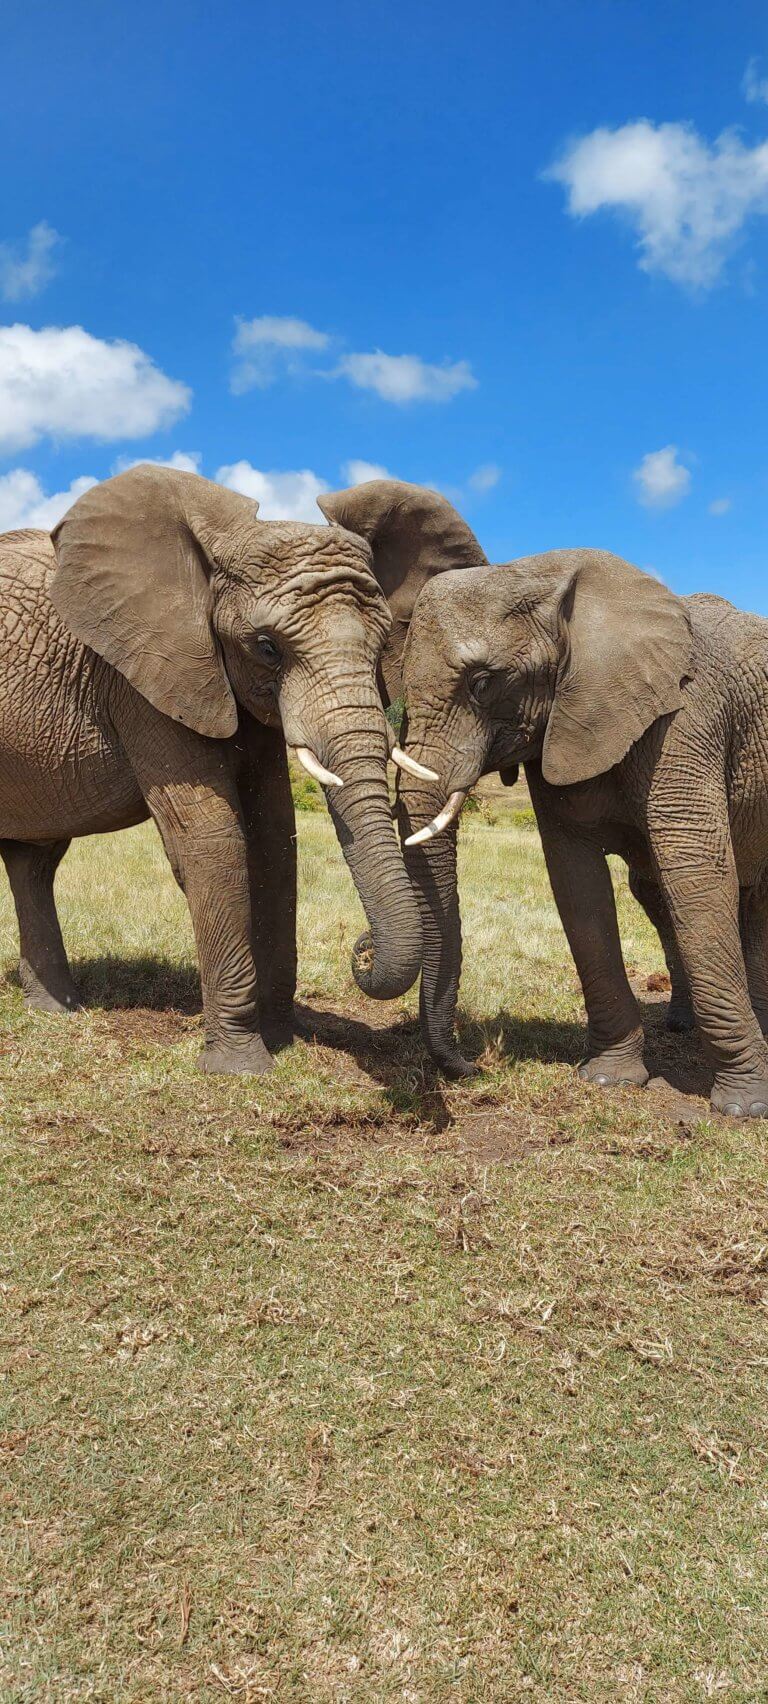 פארק הפילים נייזנה, דרך הגנים, דרום אפריקה